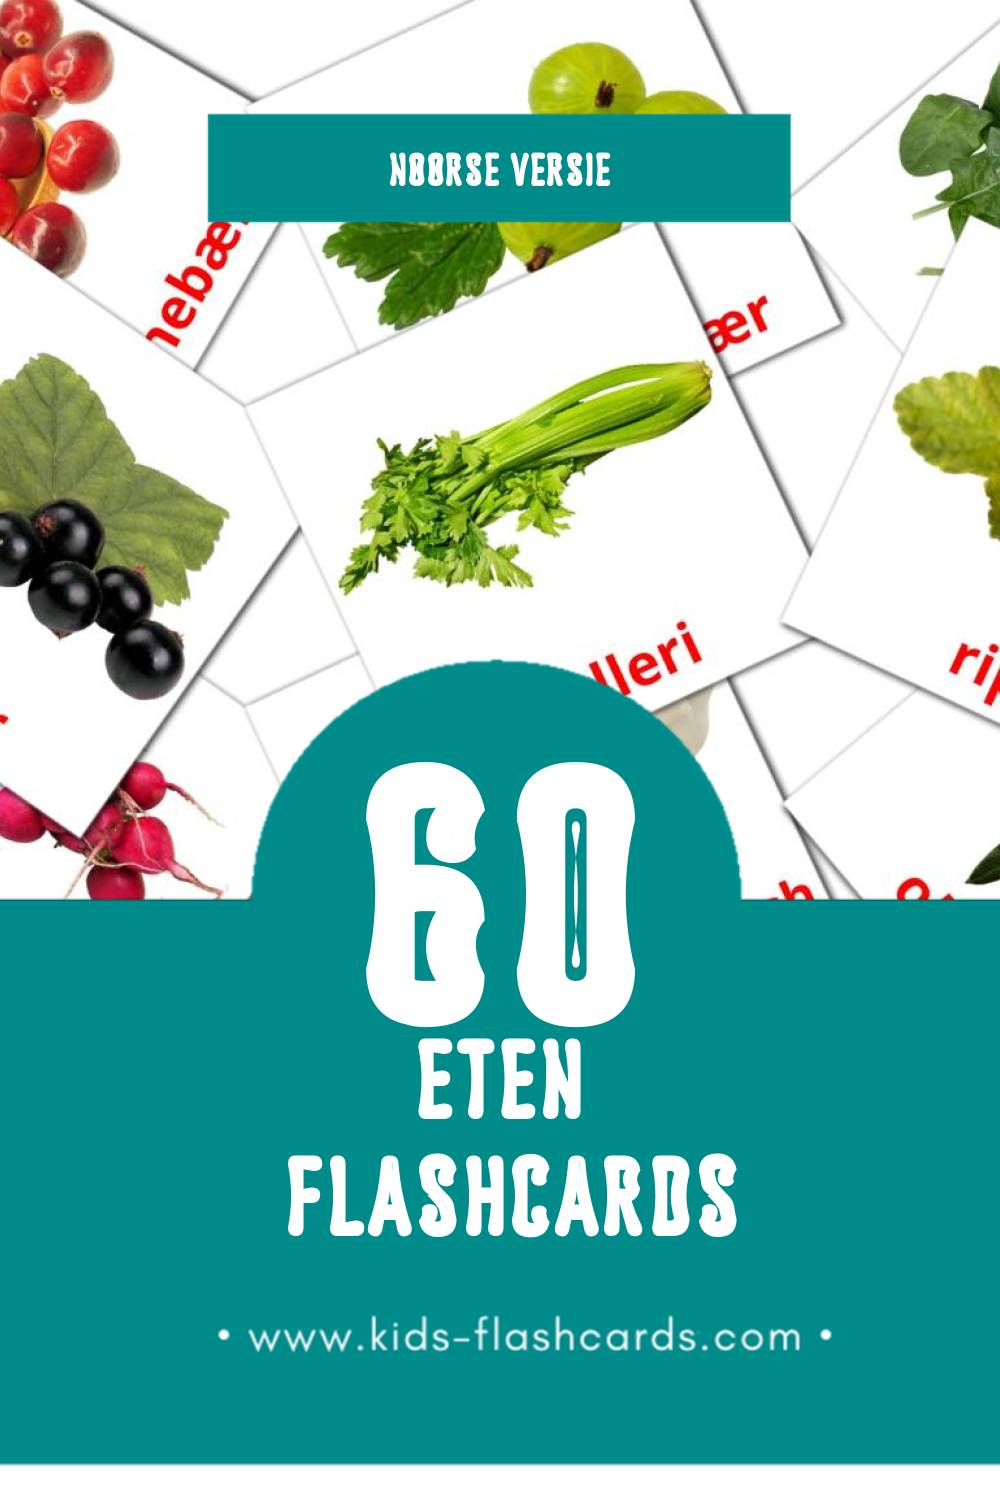 Visuele Mat Flashcards voor Kleuters (60 kaarten in het Noors)